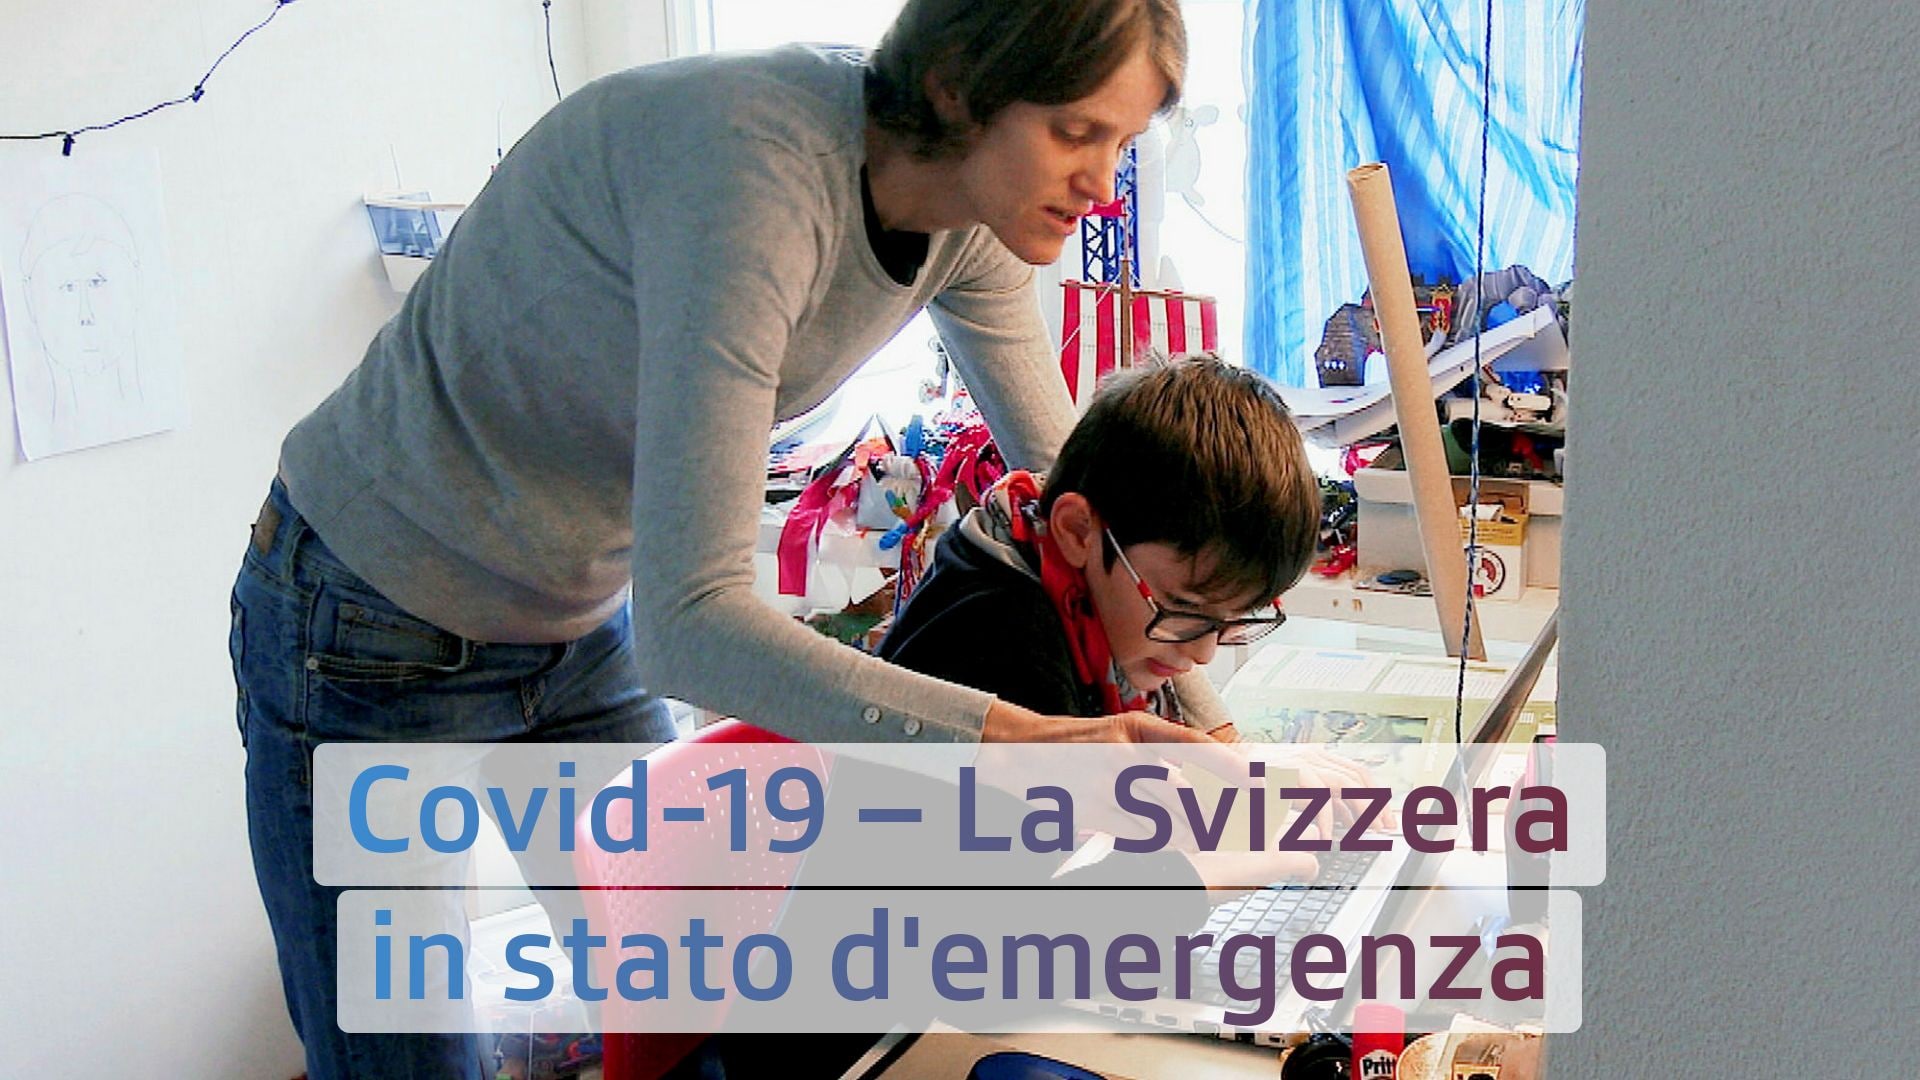 Covid-19 - La Svizzera in stato d'emergenza